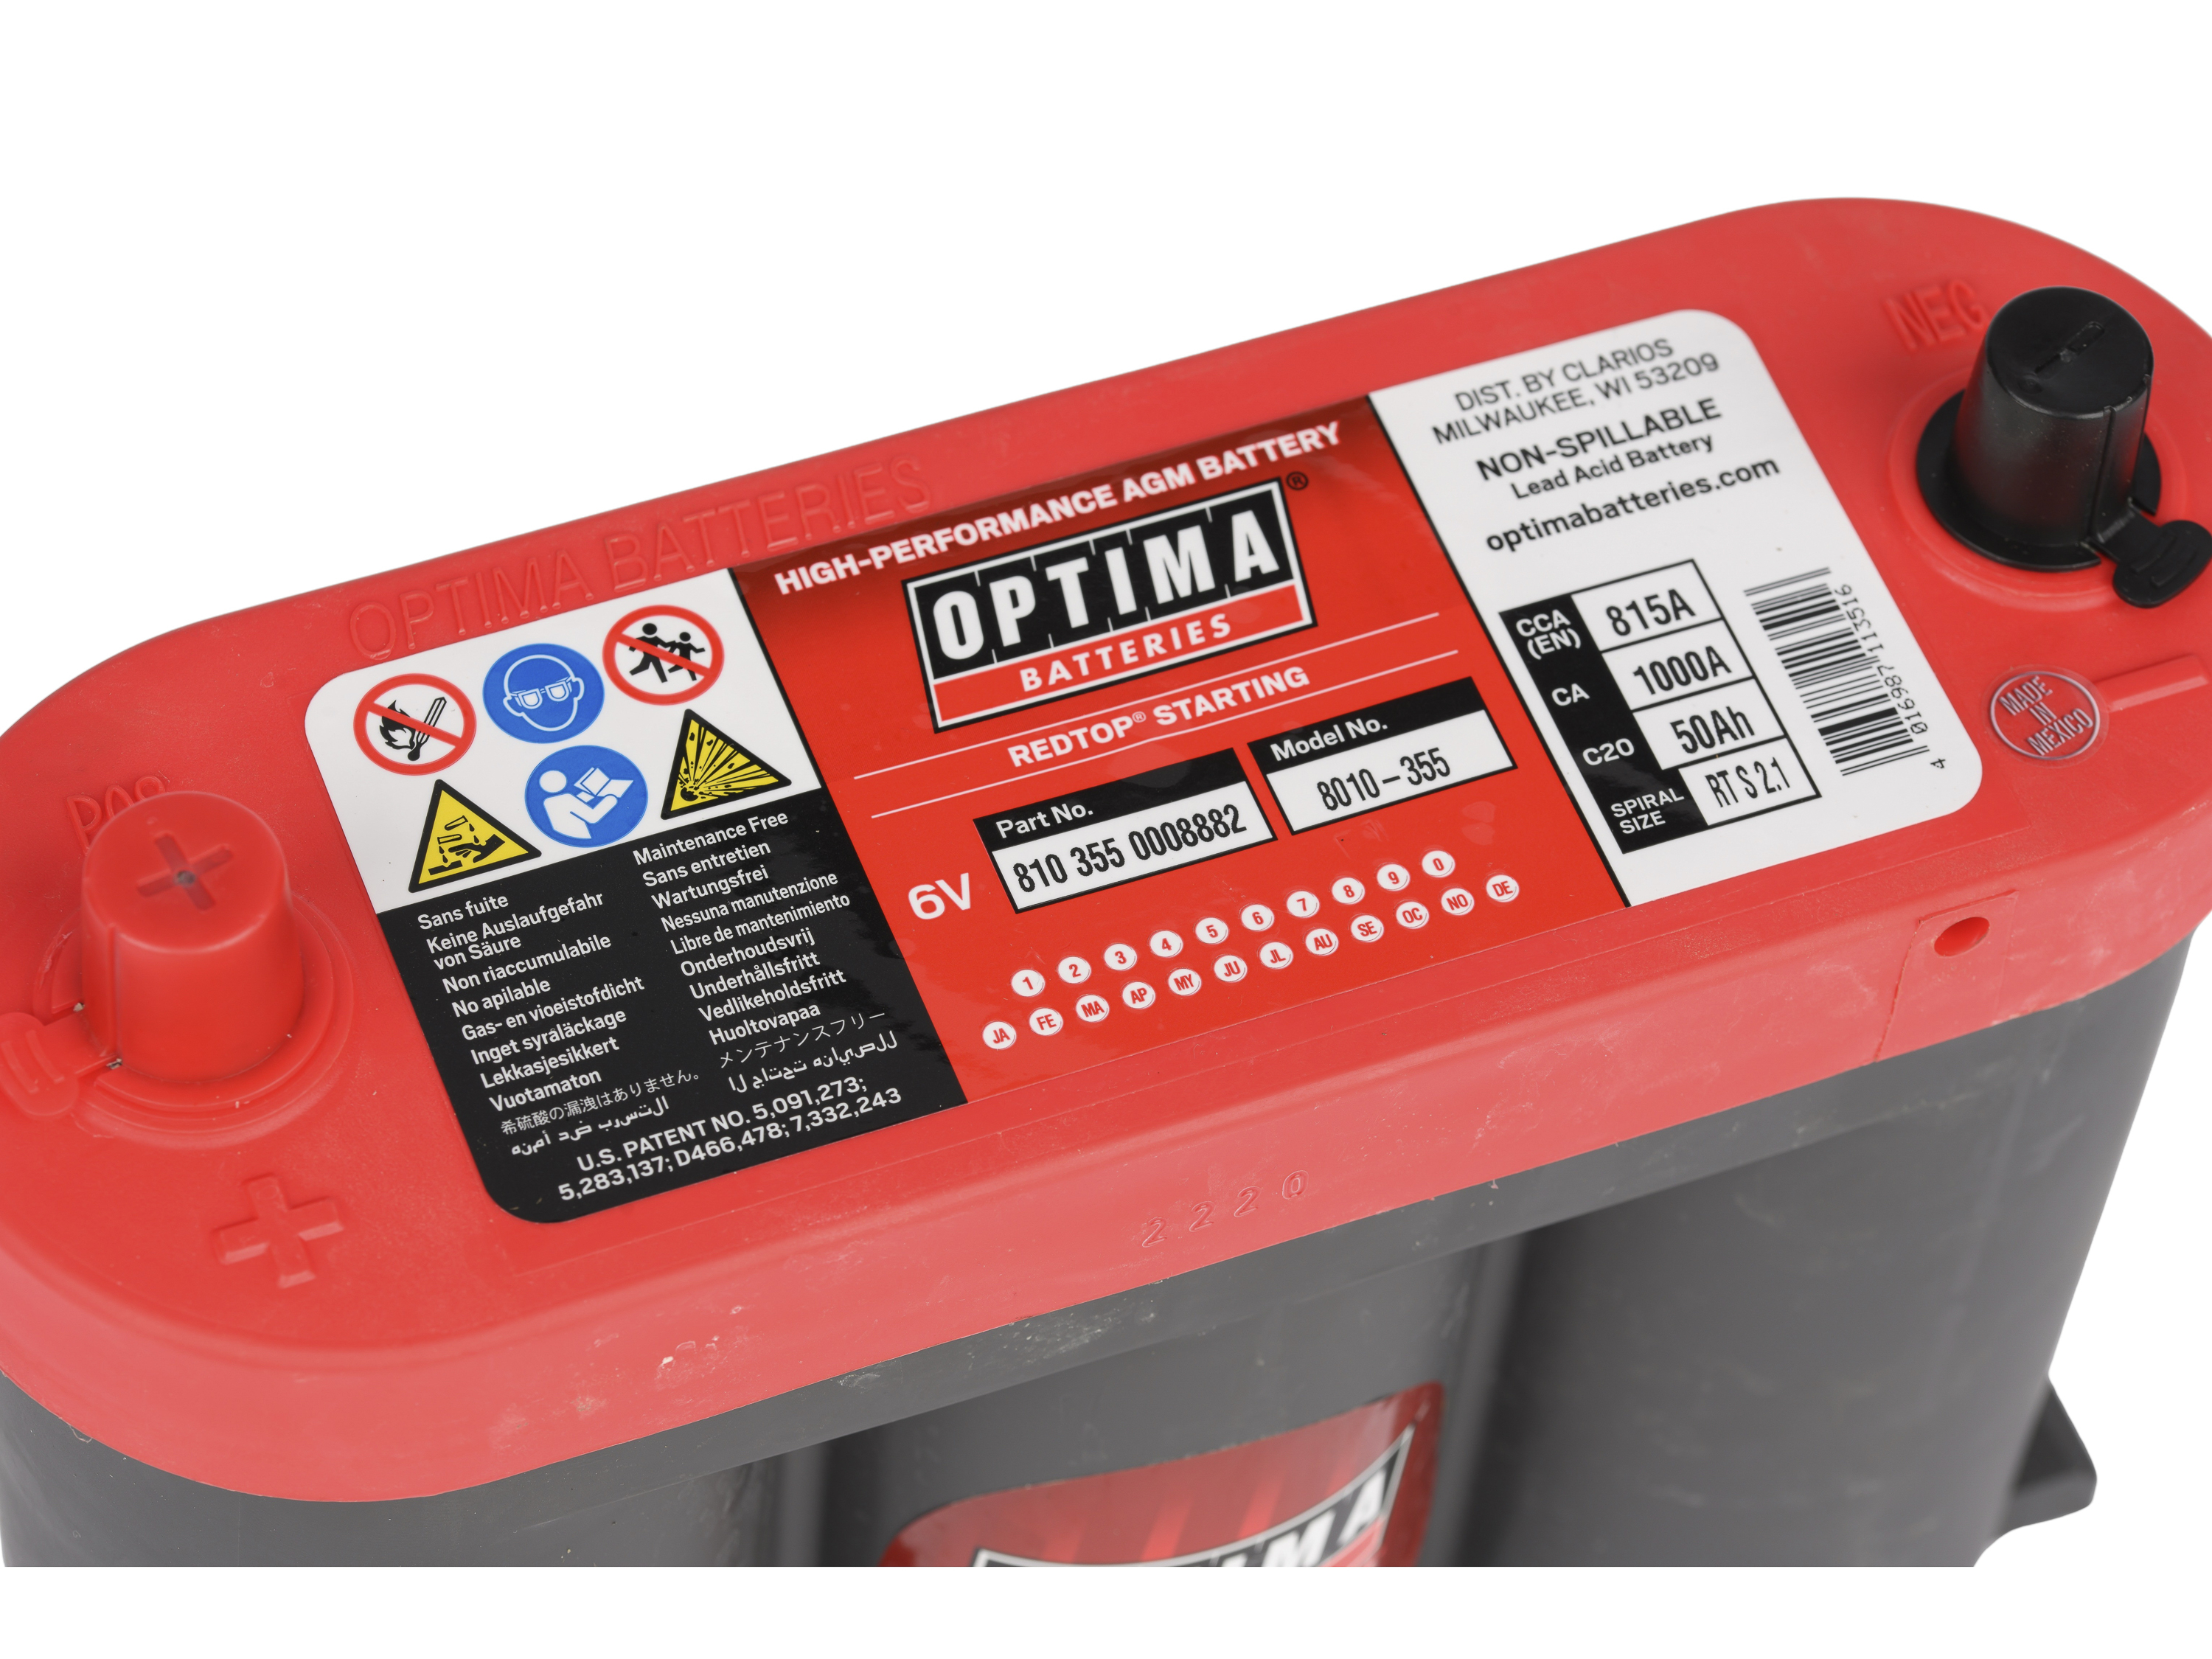 Optima Red Top S-2.1 (6V) 50Ah 815CCA Batterie - 810355000